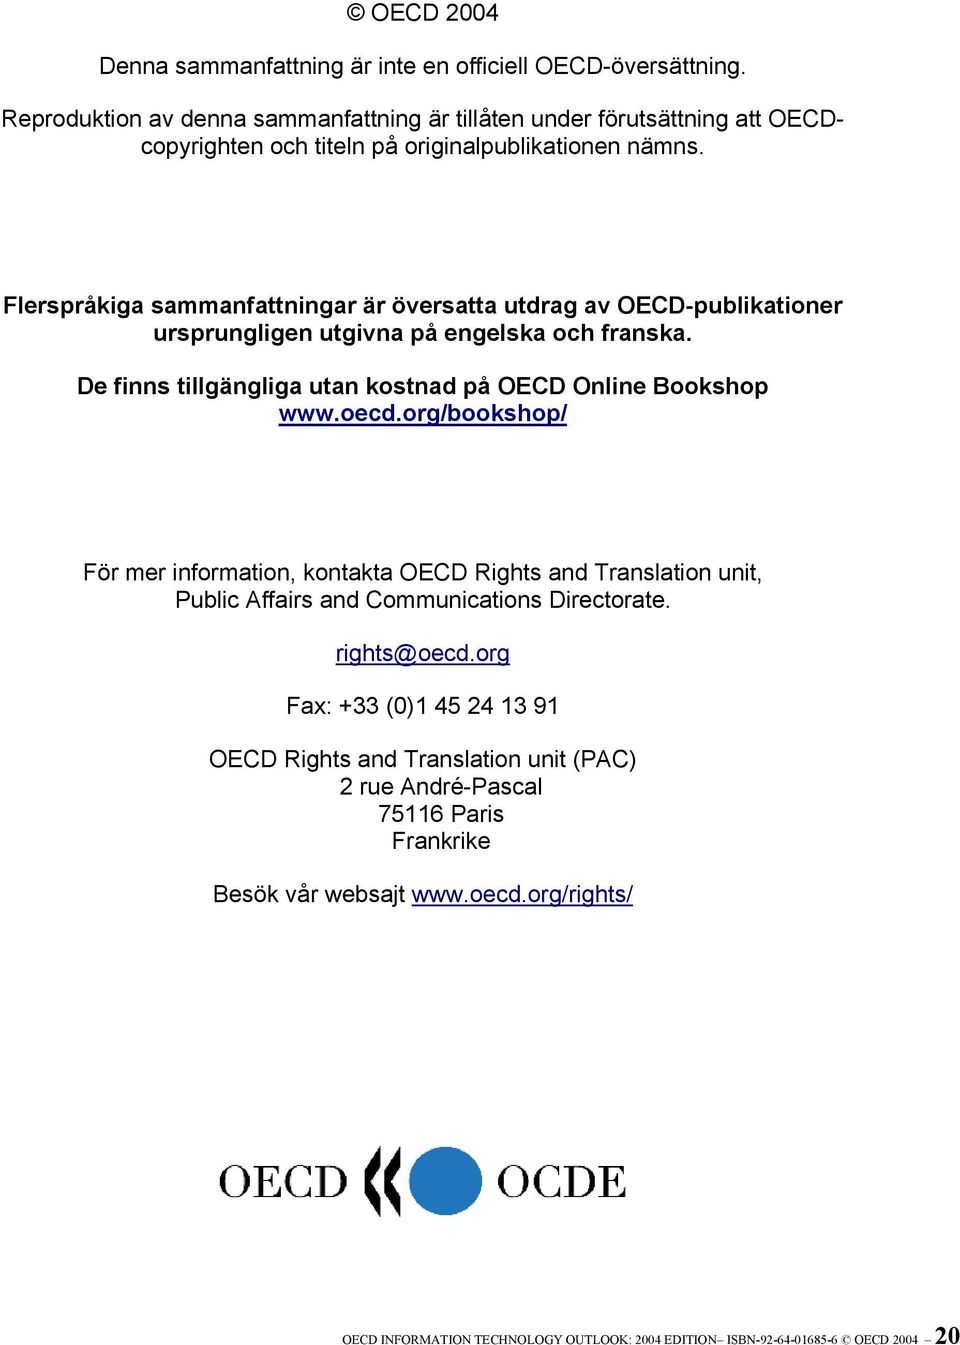 copyrighten Flerspråkiga sammanfattningar är översatta utdrag av OECD-publikationer ursprungligen utgivna på engelska och franska.